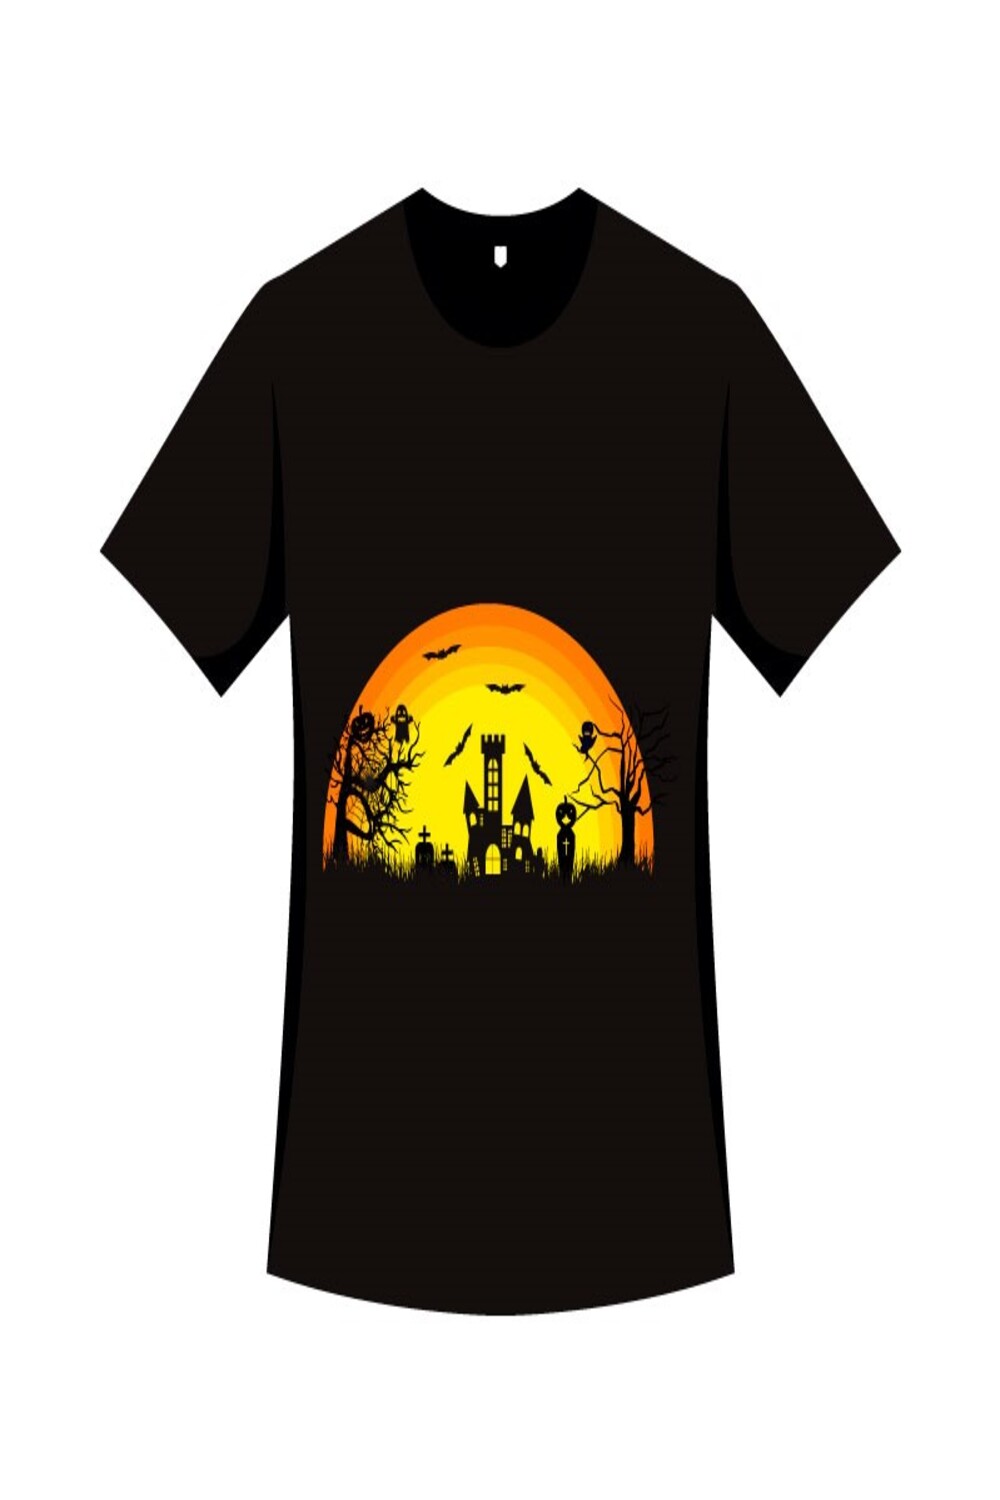 Halloween Event T-shirt Vector Design pinterest image.